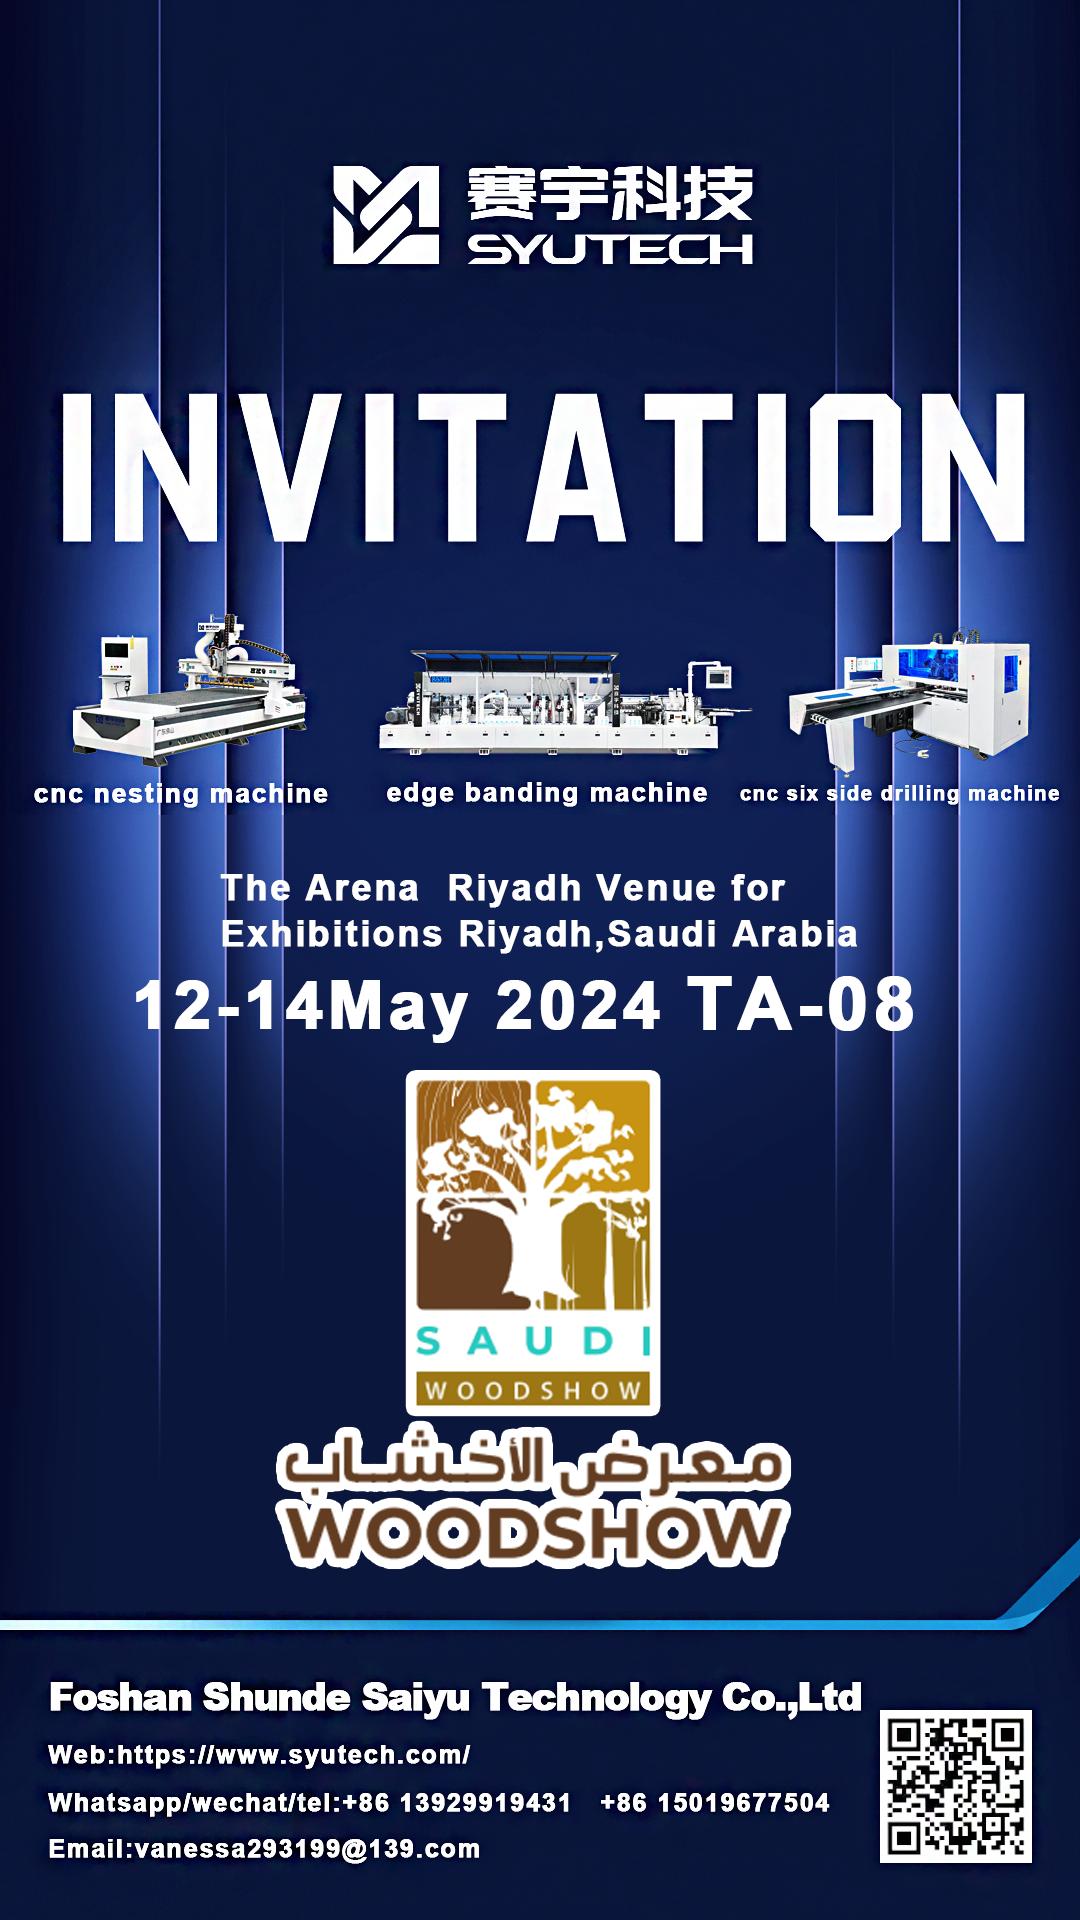 SAUDI WOODSHOW 2024 Международная выставка деревообработки в Саудовской Аравии, добро пожаловать на наш стенд!